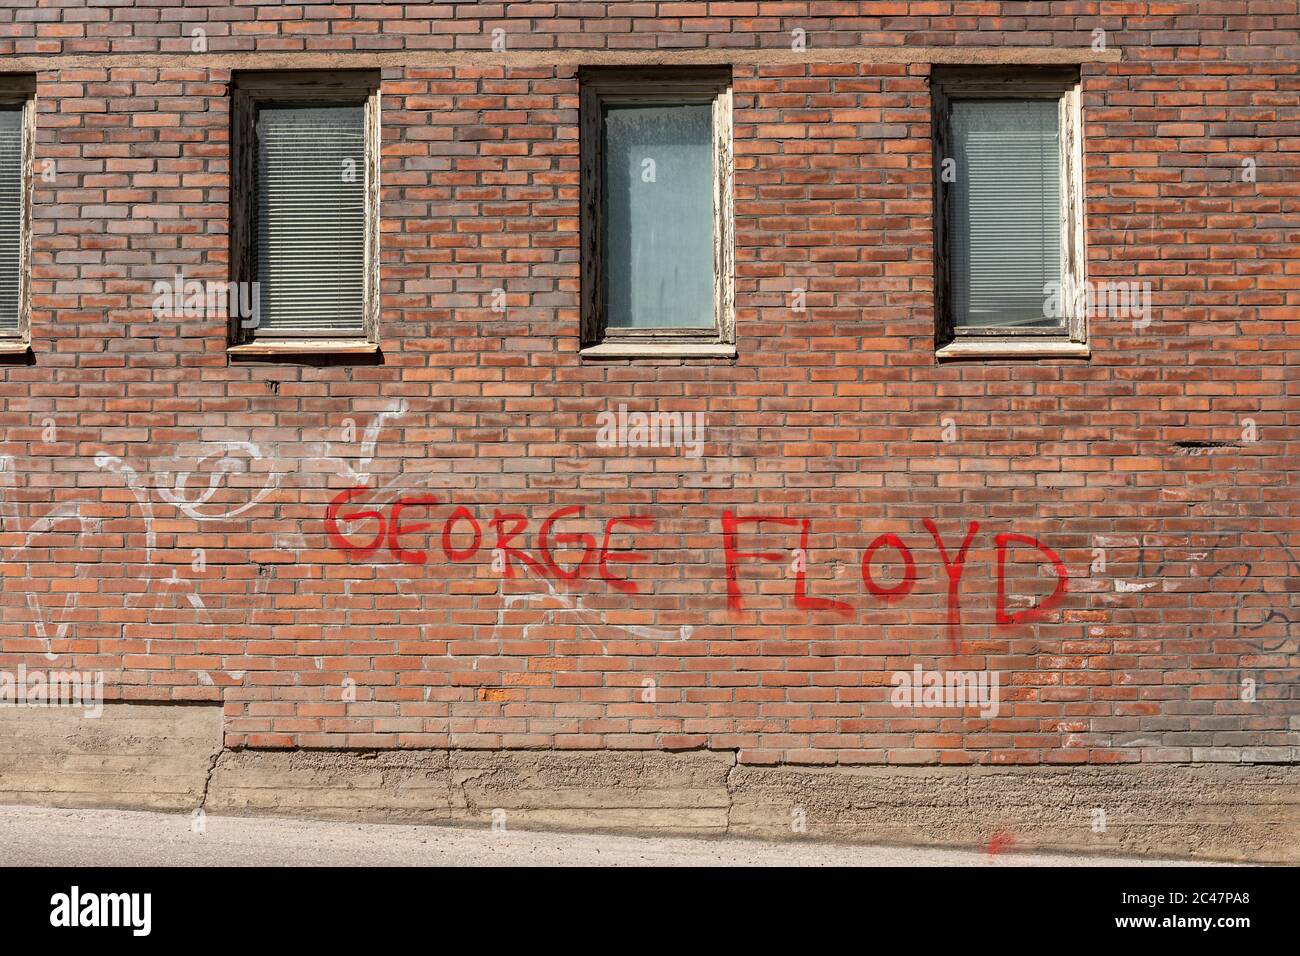 George Floyd spray pintado de rojo en una antigua pared de ladrillo en el distrito de Munkkisaari de Helsinki, Finlandia Foto de stock